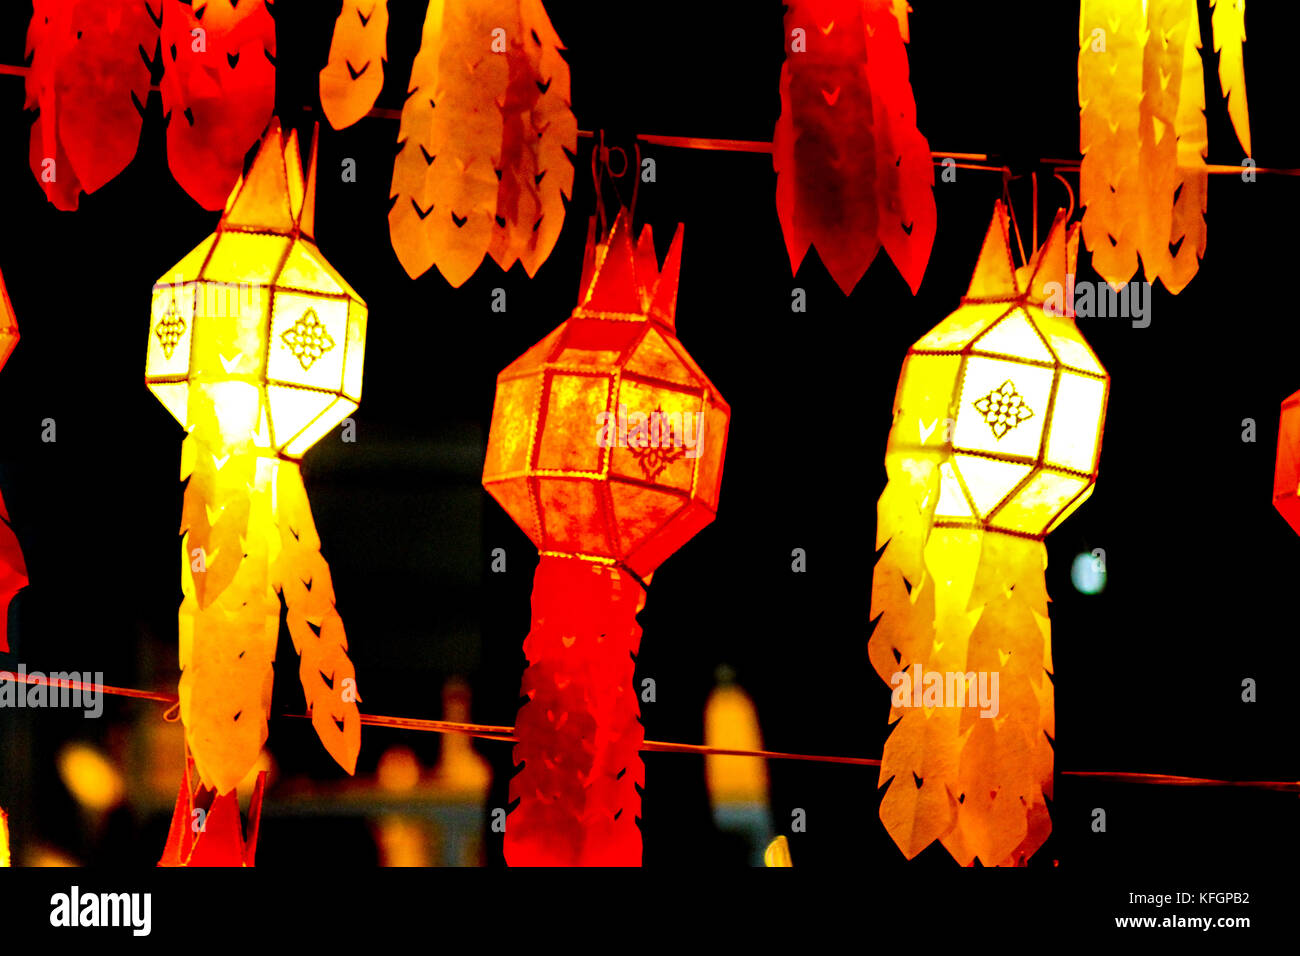 Lanterne thaïlandaise traditionnelle appelée Lanna Lanternes affichée dans le marché nocturne de Chiang mai, Thaïlande Banque D'Images